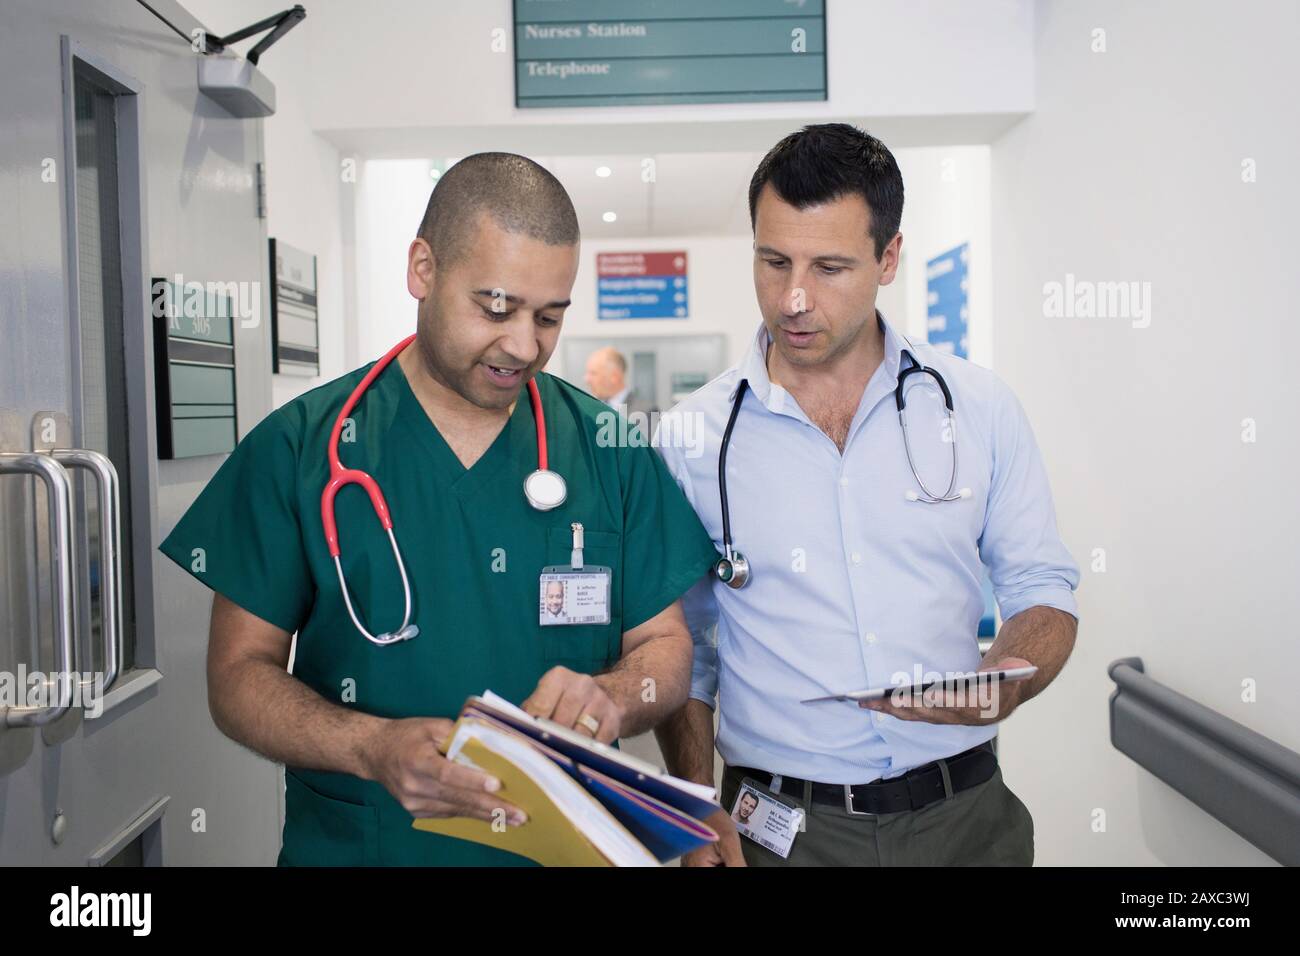 Medico e chirurgo di sesso maschile che discute la cartella medica, facendo giri nel corridoio dell'ospedale Foto Stock